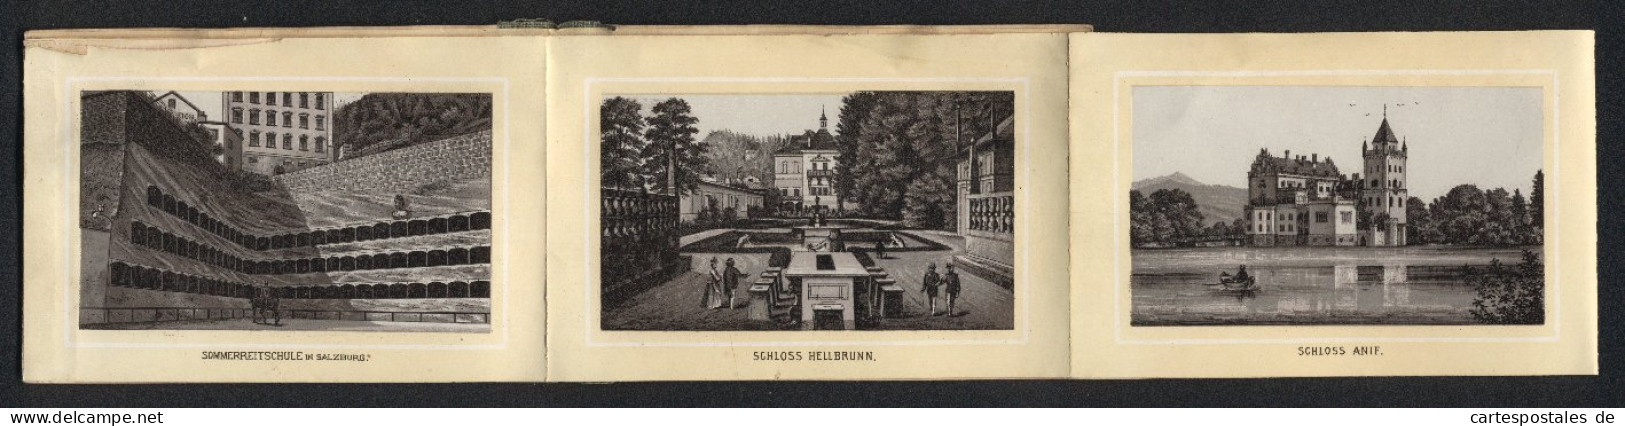 Leporello-Album Salzburg Mit 12 Lithographie-Ansichten, Berchtesgaden, Schloss Anif, Sommerreitschule, Mozartplatz  - Lithographies